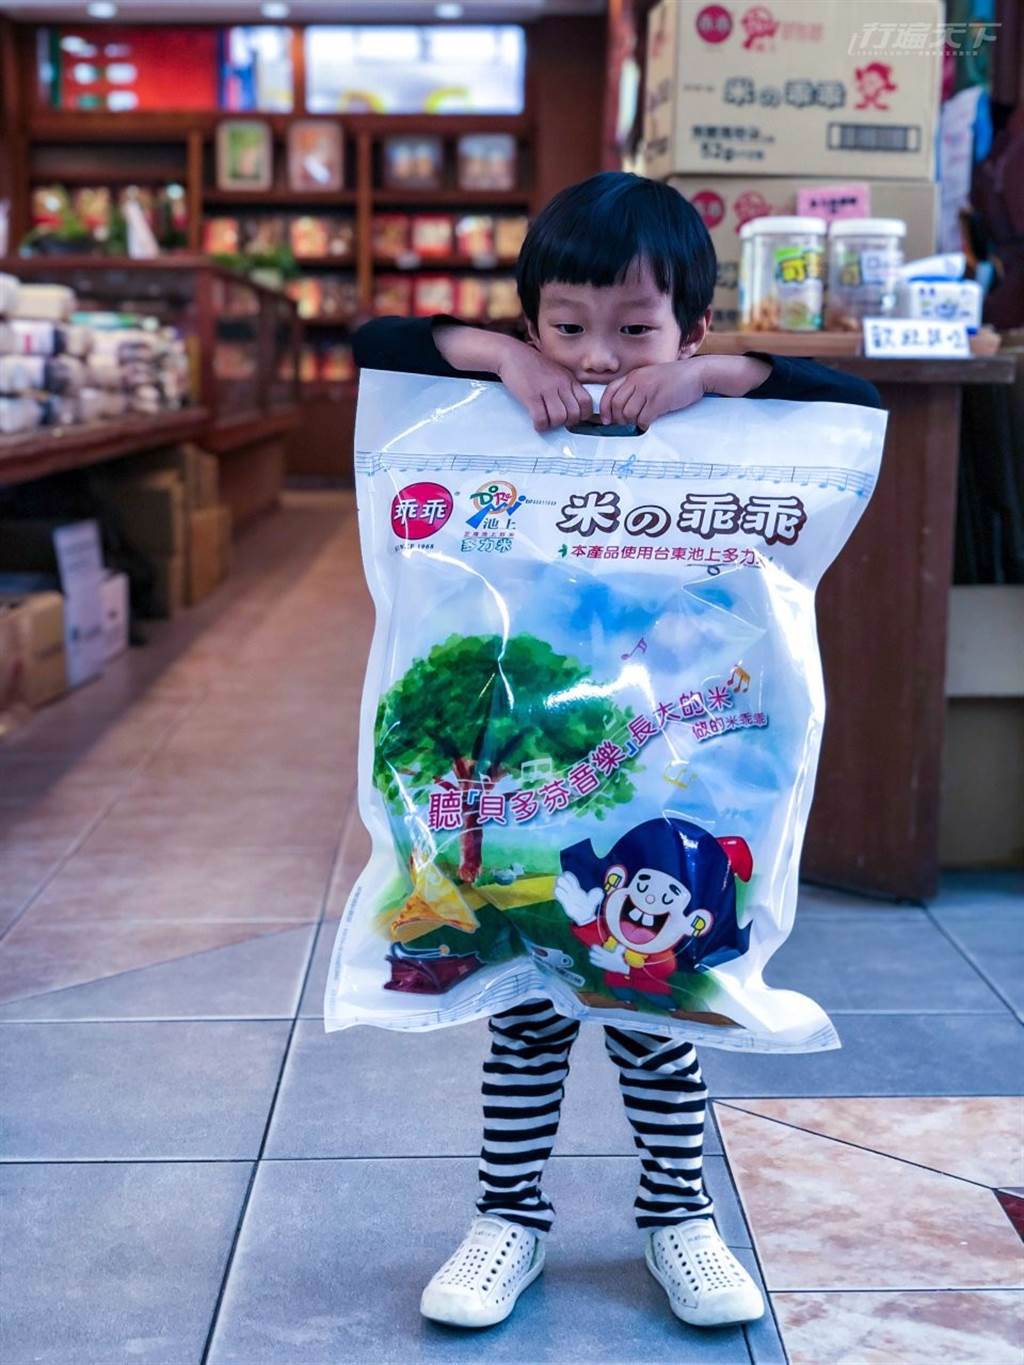 大地飯包更與乖乖合作推出大包裝米乖乖，很受小孩喜愛。 (圖/行遍天下提供)